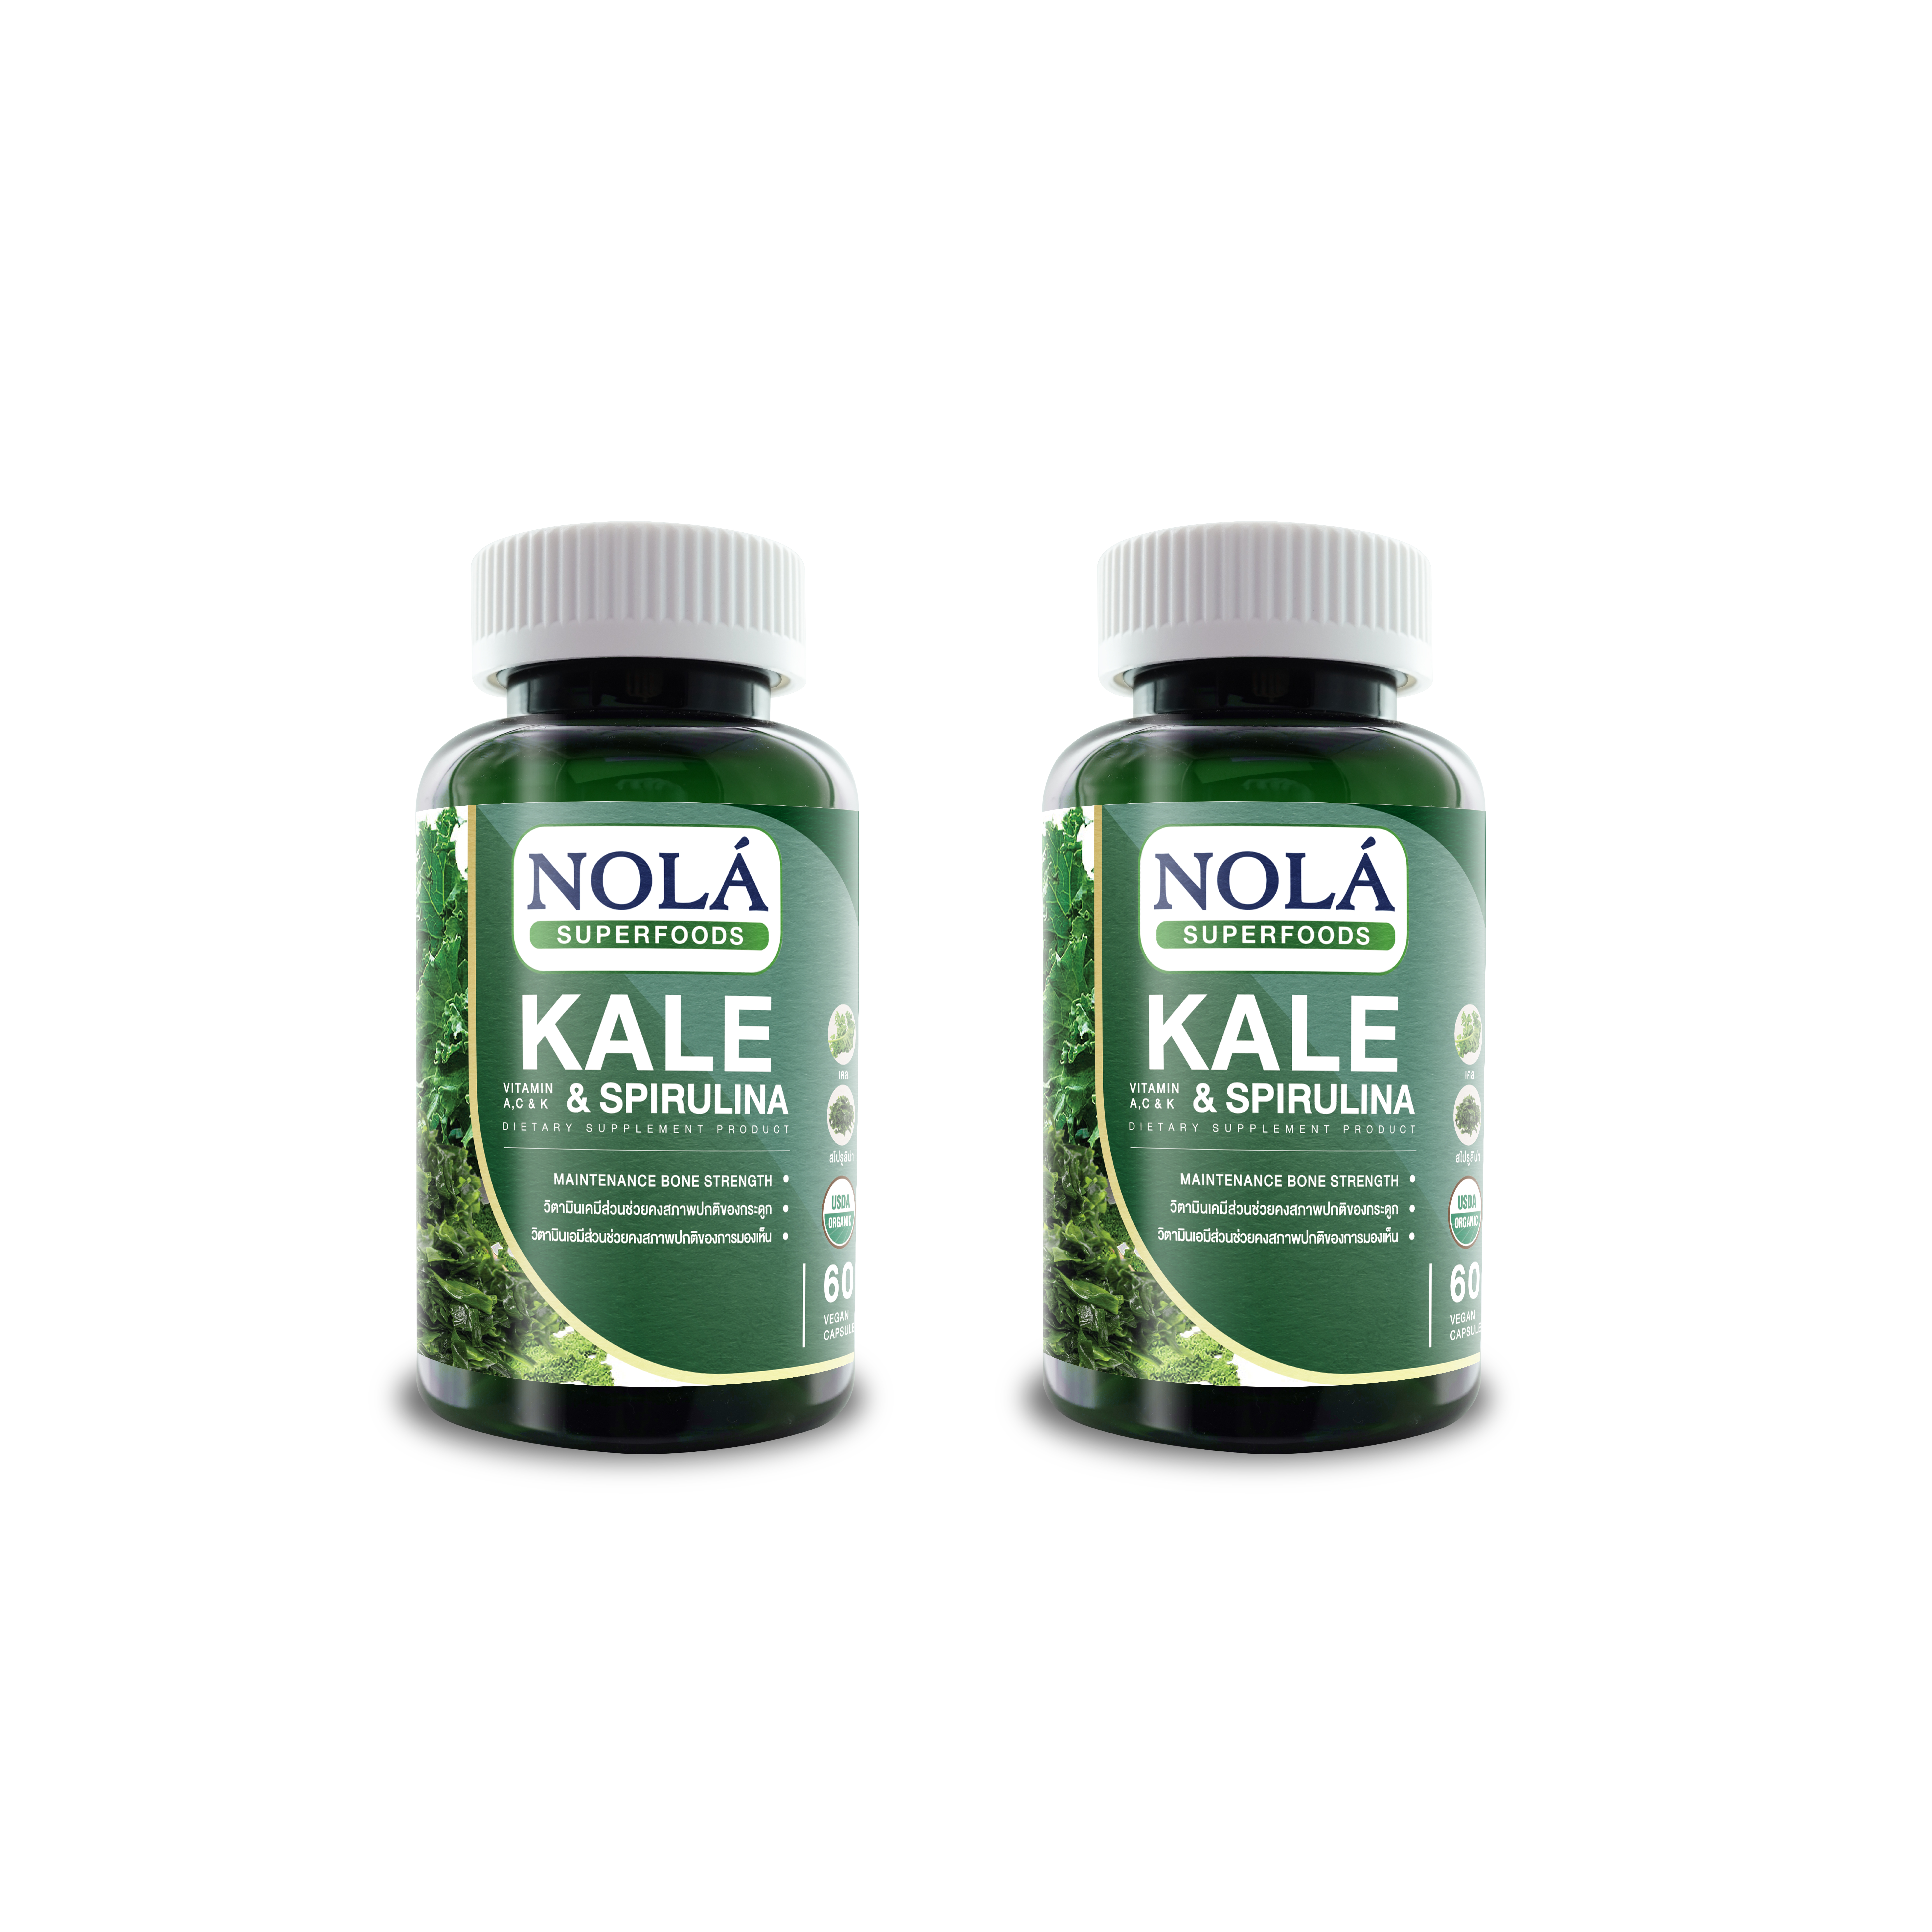 NOLA Kale & Spirulina 60 vegan capsules (2 bottles)